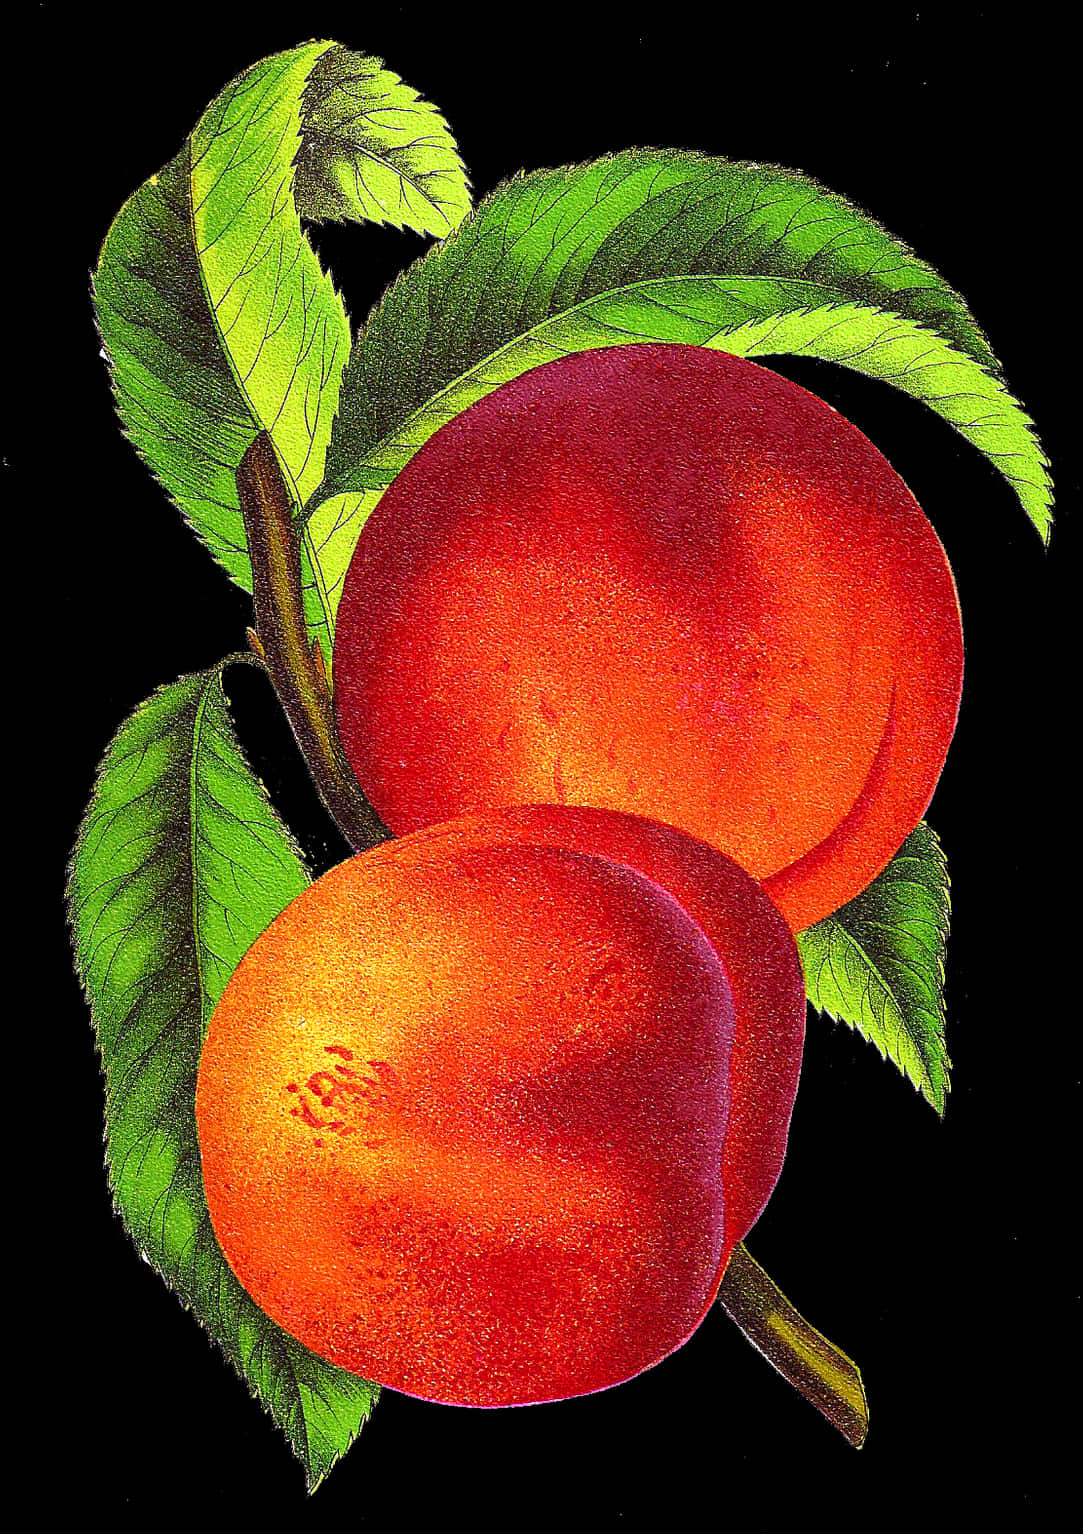 A Close Up Of Fruit